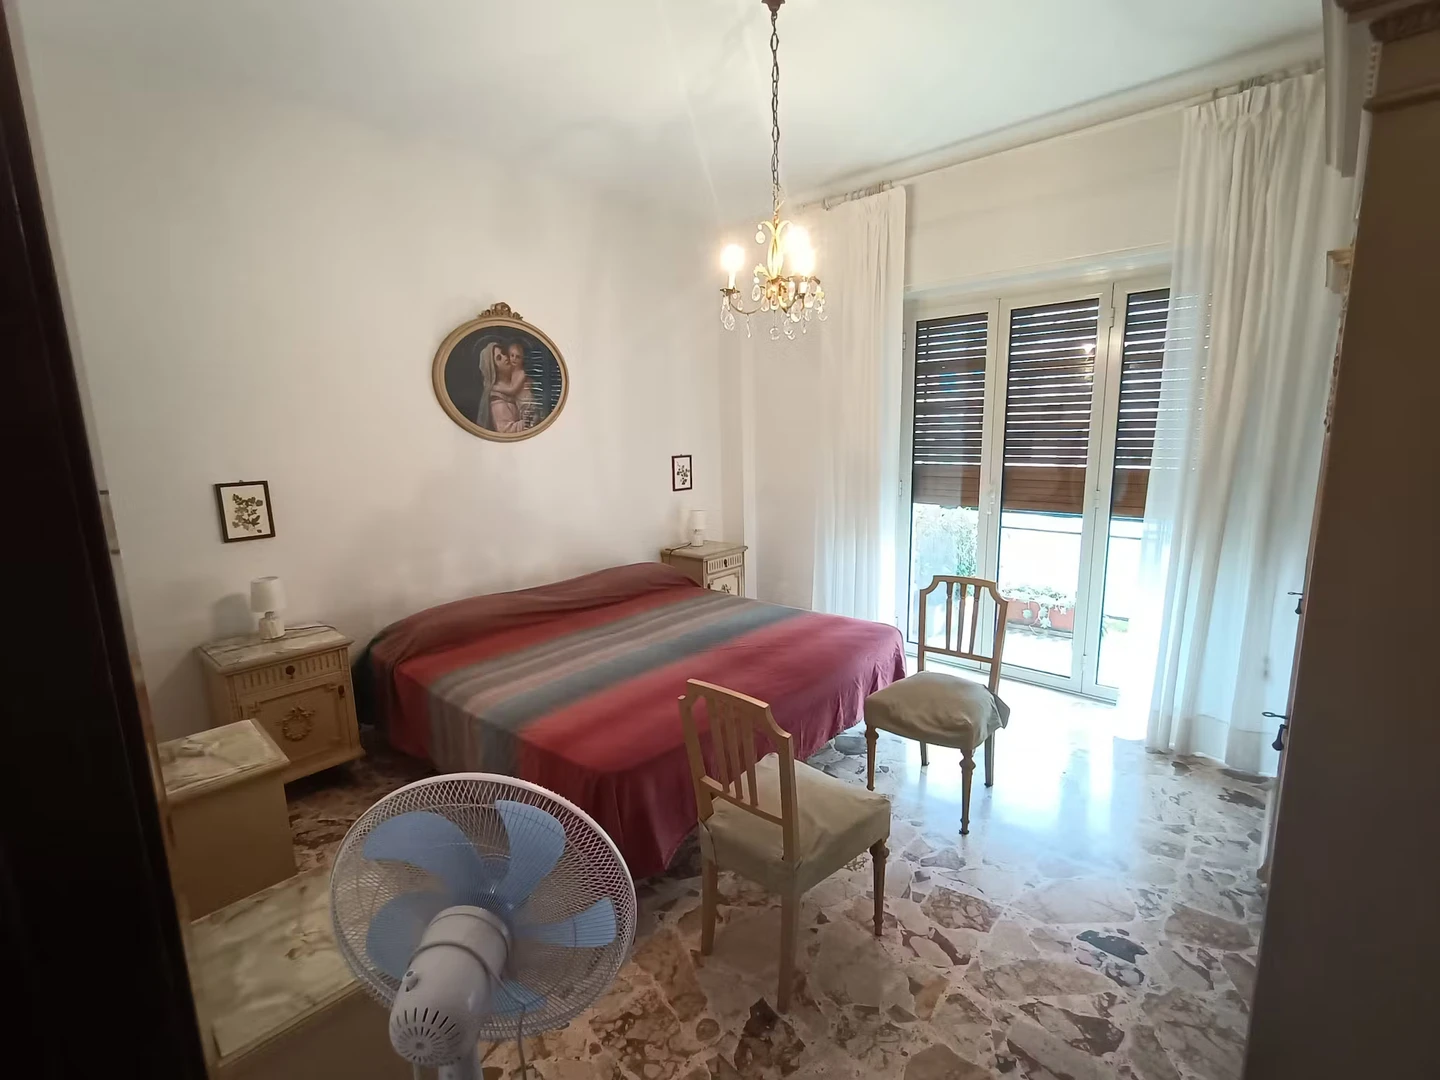 Pokój do wynajęcia z podwójnym łóżkiem w Reggio Calabria